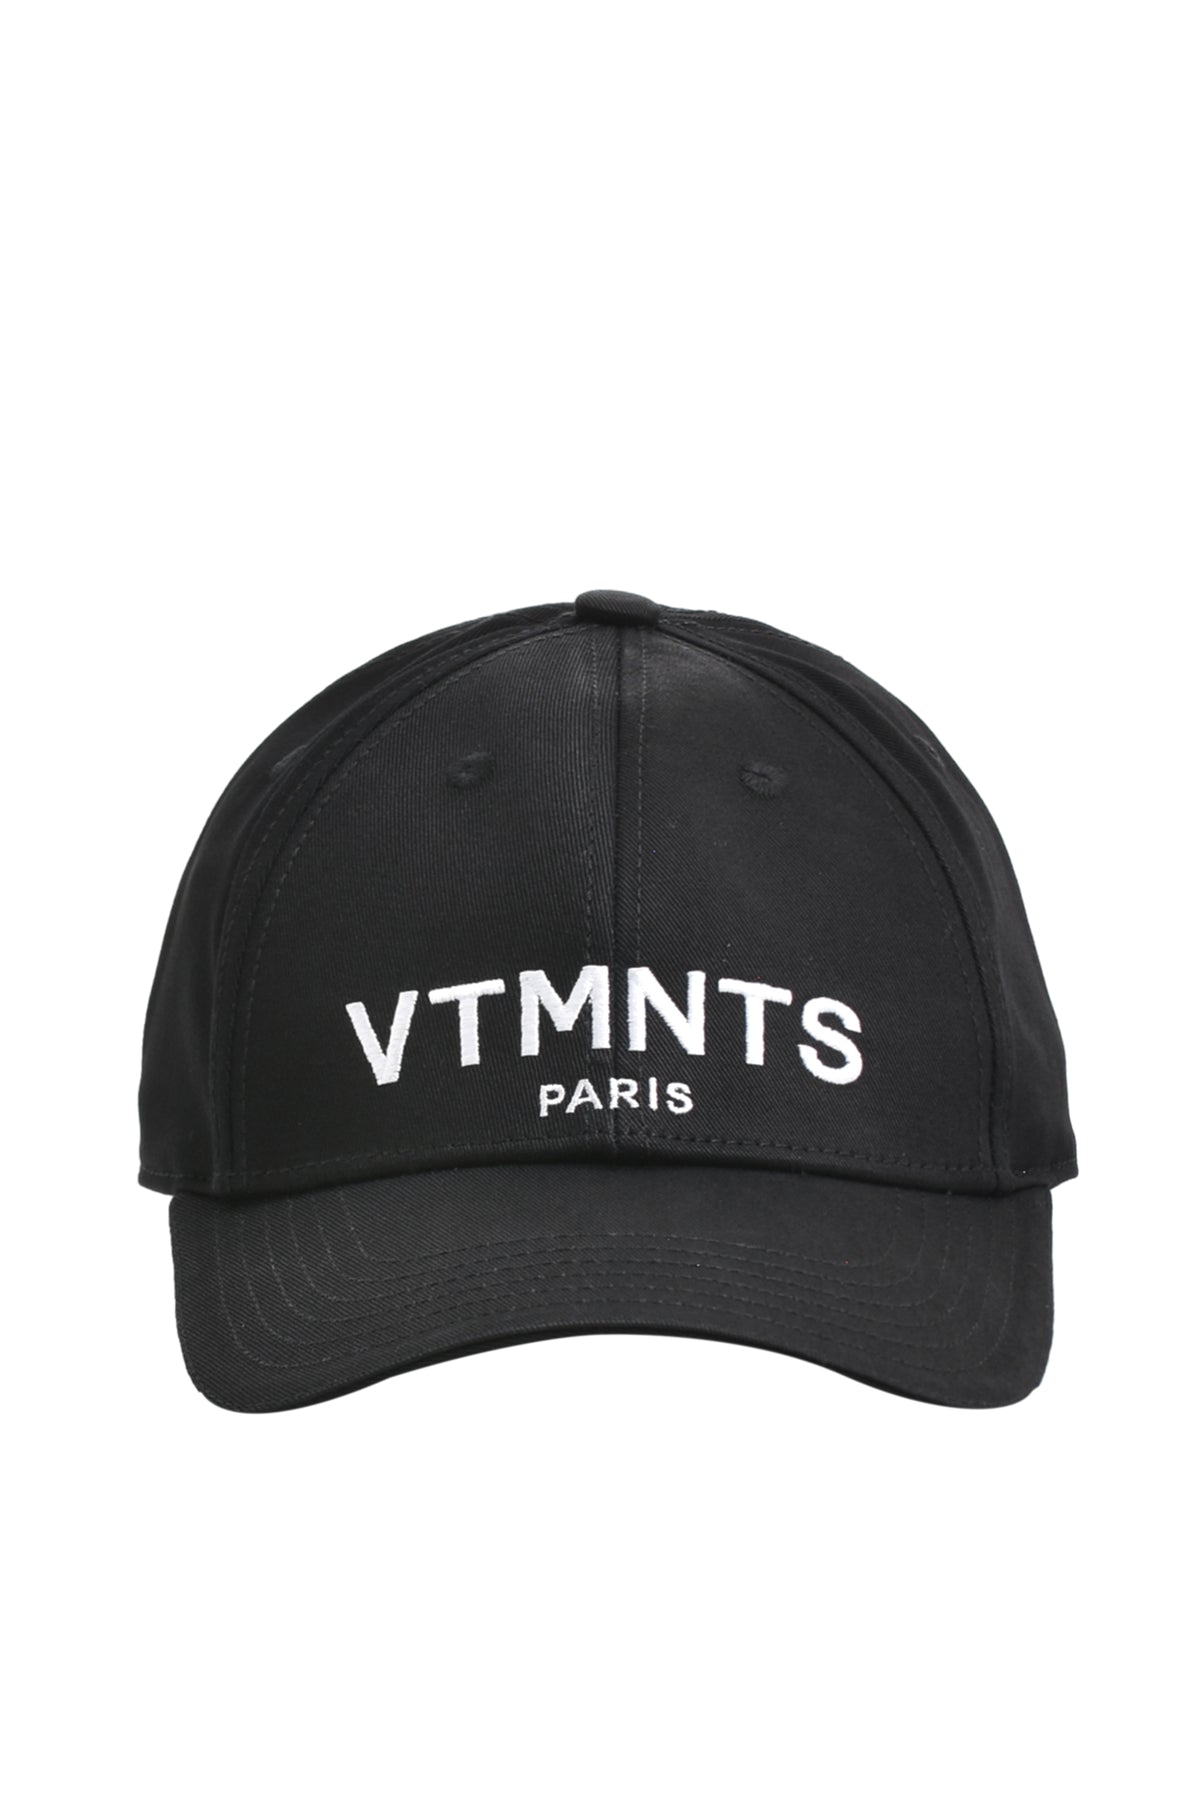 VTMNTS VTMNTS PARIS LOGO CAP / BLK WHT